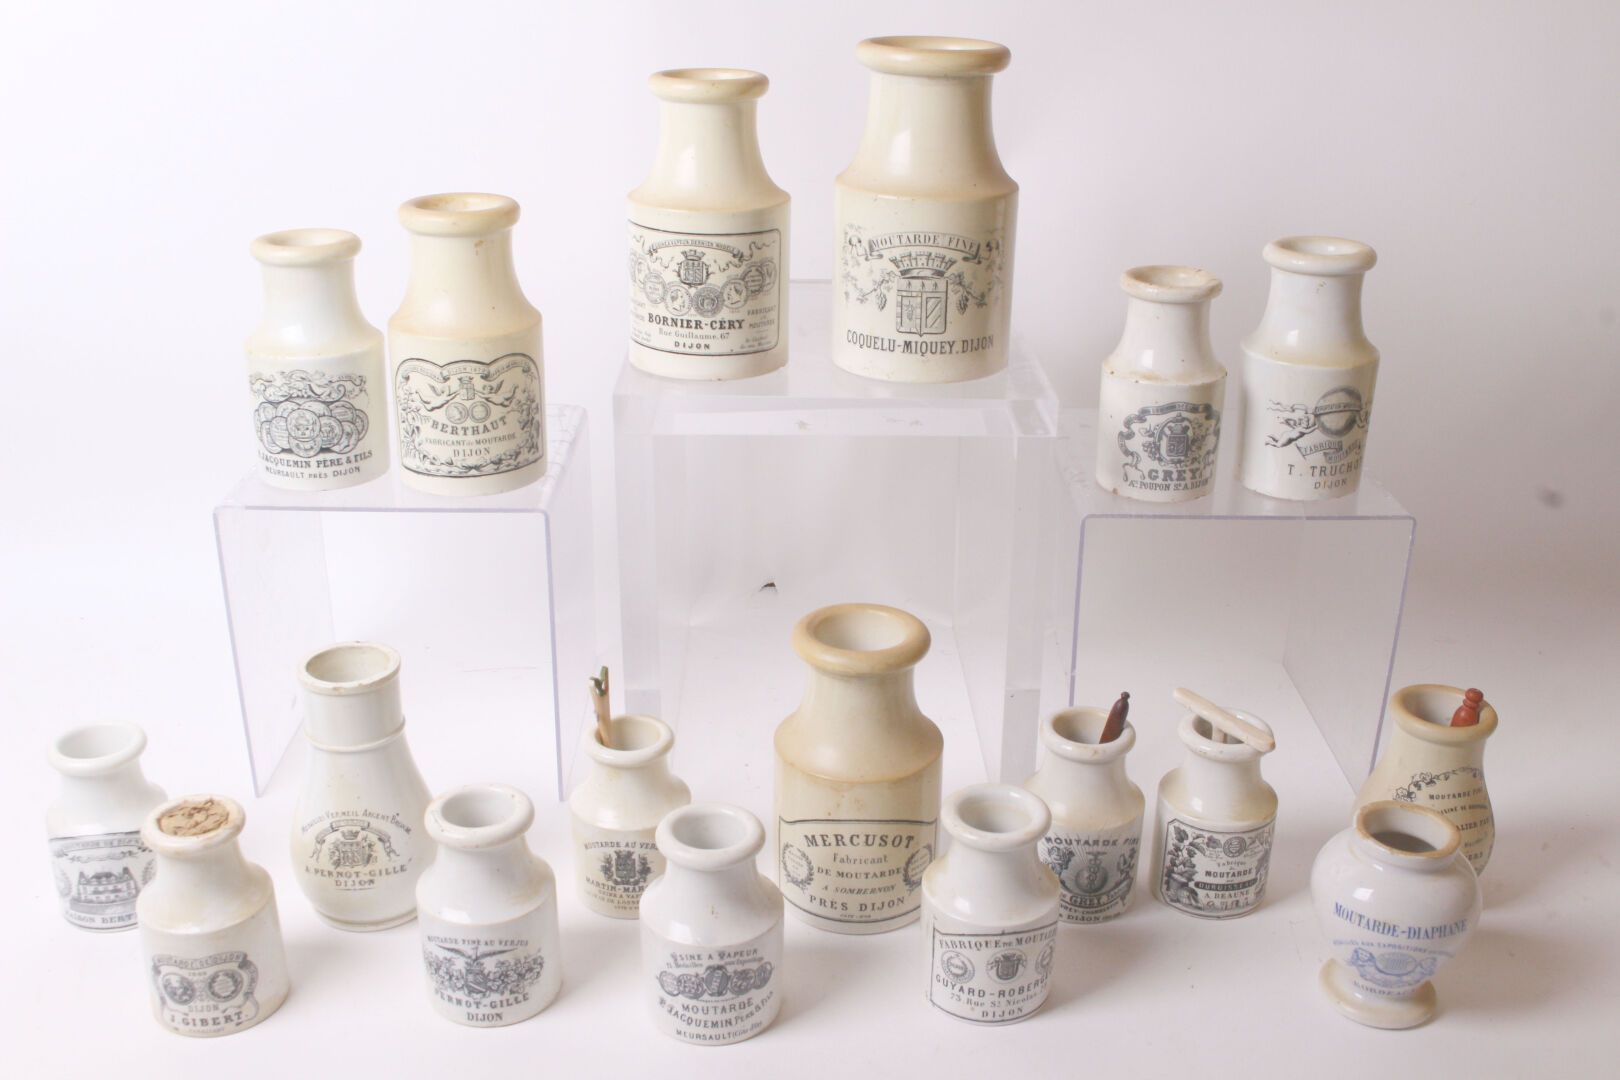 Null 克里尔和蒙特罗

一套带有格纹装饰的精美陶罐，包括Grey, Jacquemin和其他。

底座下有标记

19世纪